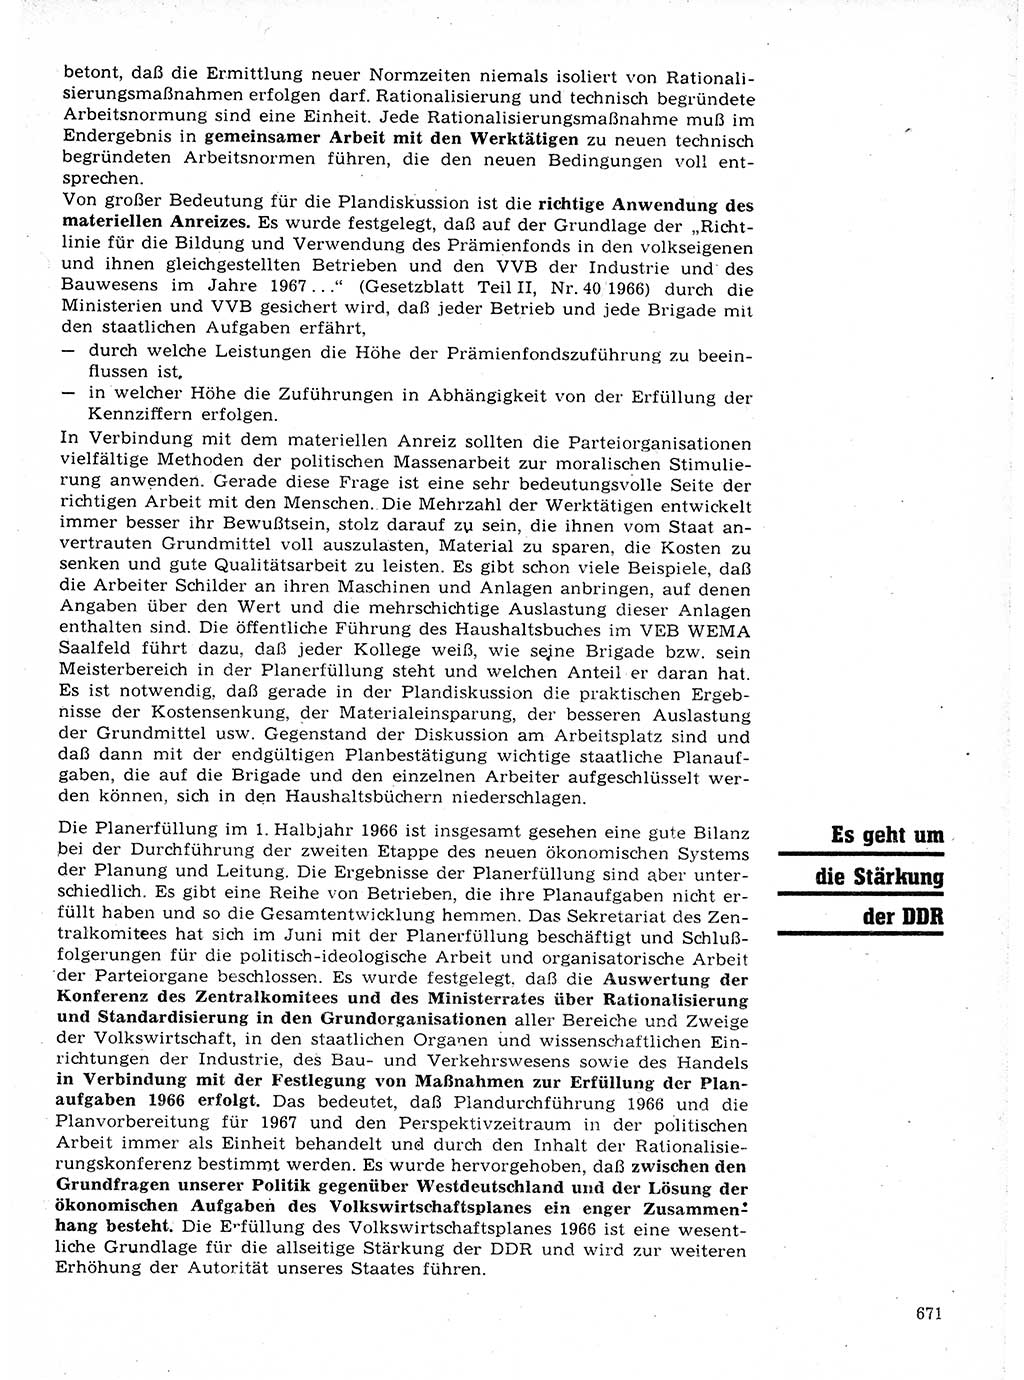 Neuer Weg (NW), Organ des Zentralkomitees (ZK) der SED (Sozialistische Einheitspartei Deutschlands) für Fragen des Parteilebens, 21. Jahrgang [Deutsche Demokratische Republik (DDR)] 1966, Seite 671 (NW ZK SED DDR 1966, S. 671)